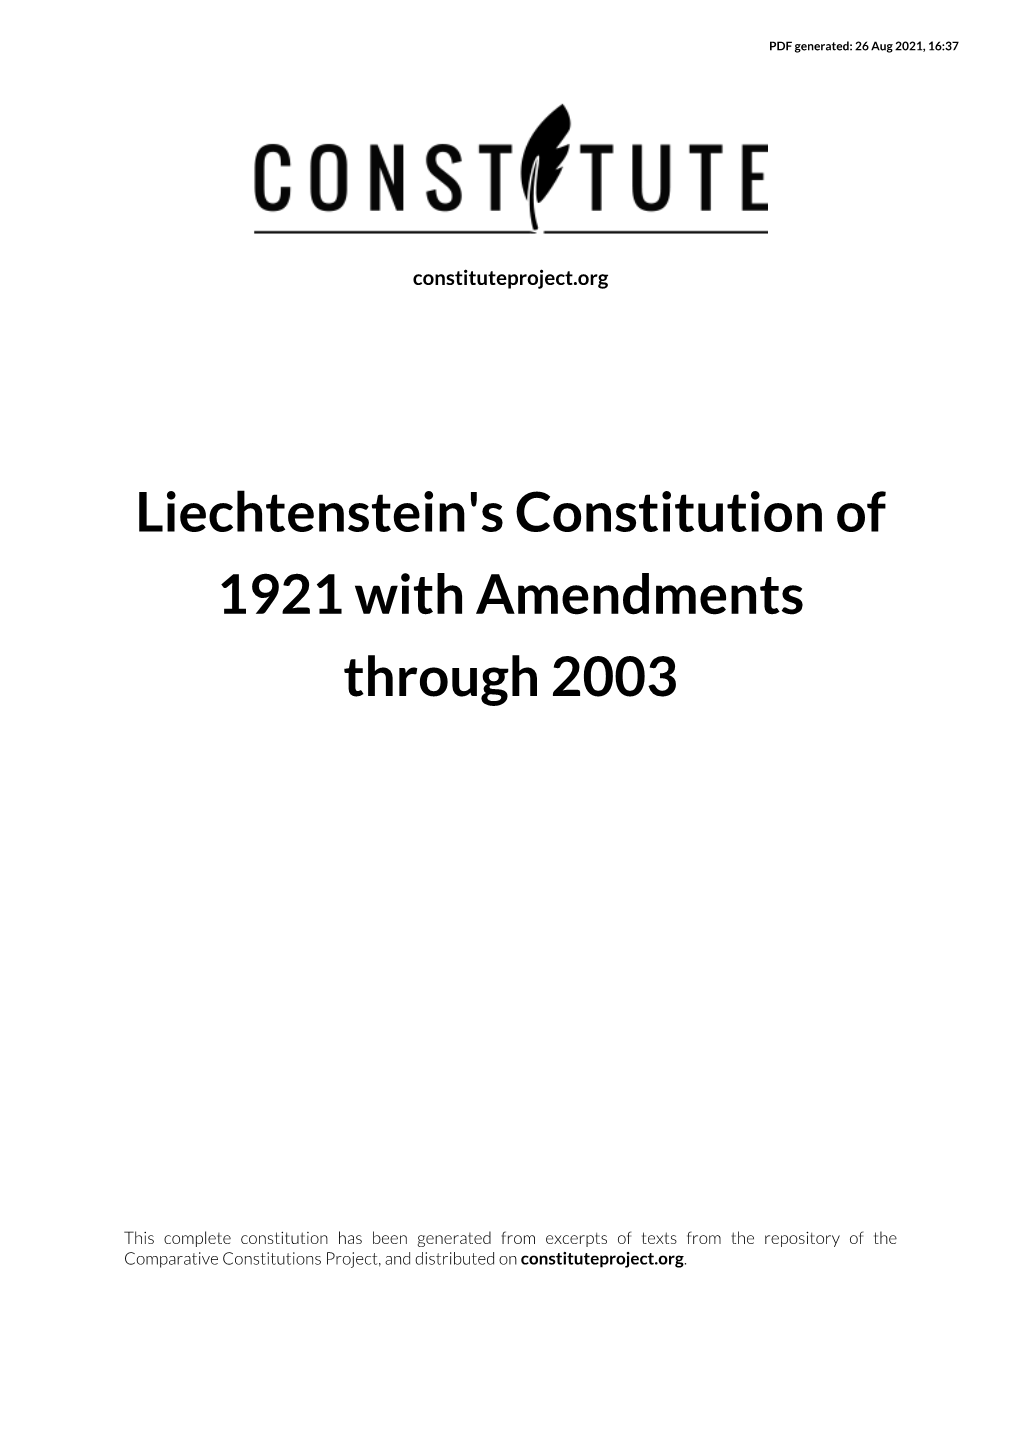 Liechtenstein's Constitution of 1921 with Amendments Through 2003